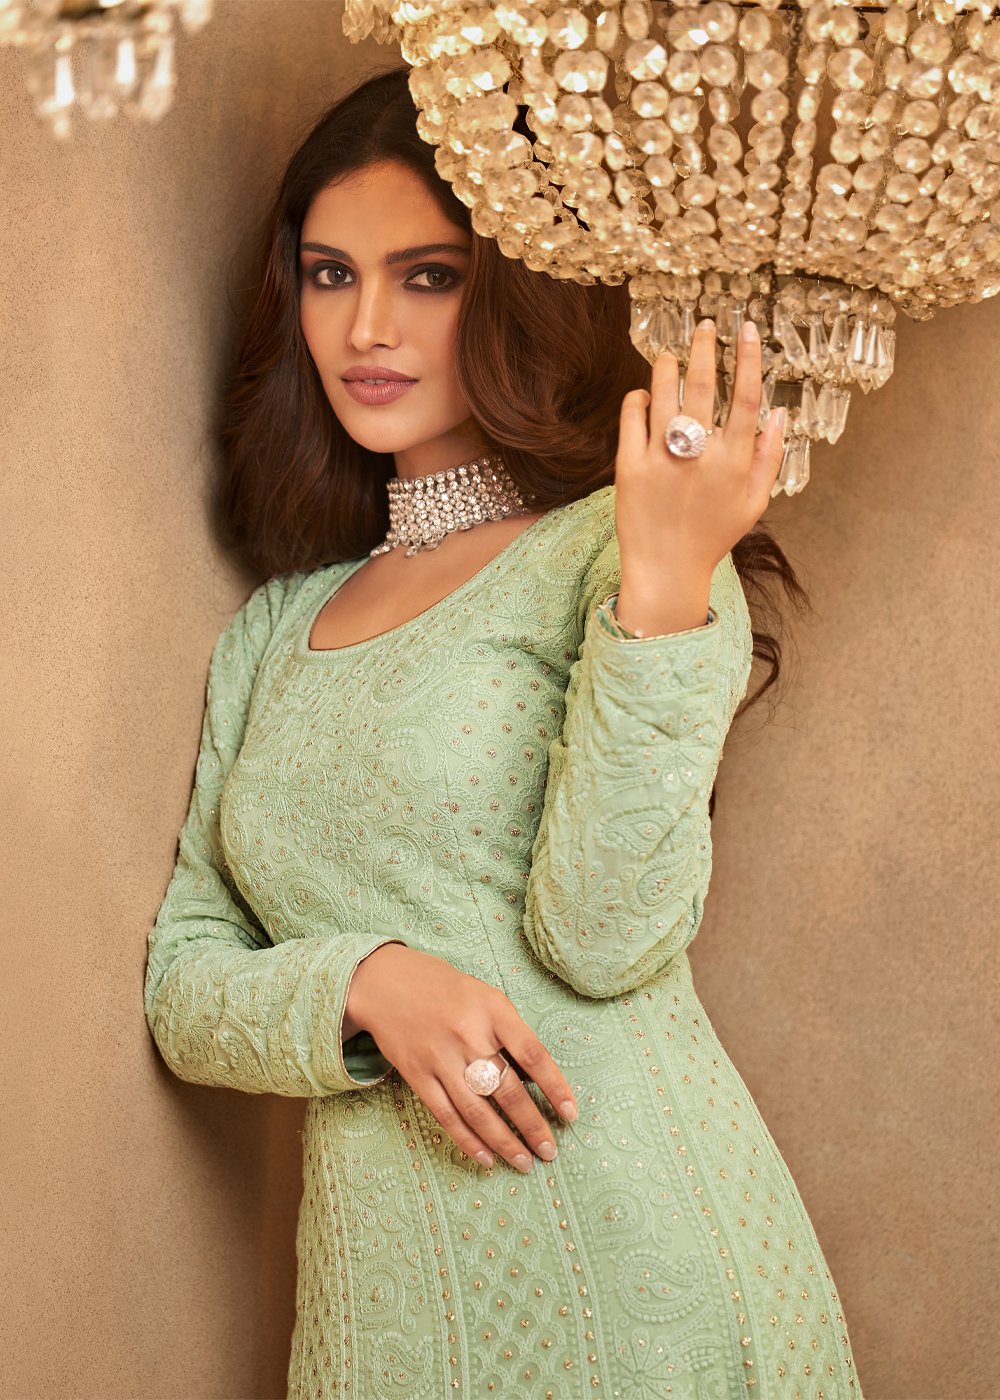 Buy Celadon Green Lucknowi Style Anarkali - Georgette Anarkali Suit